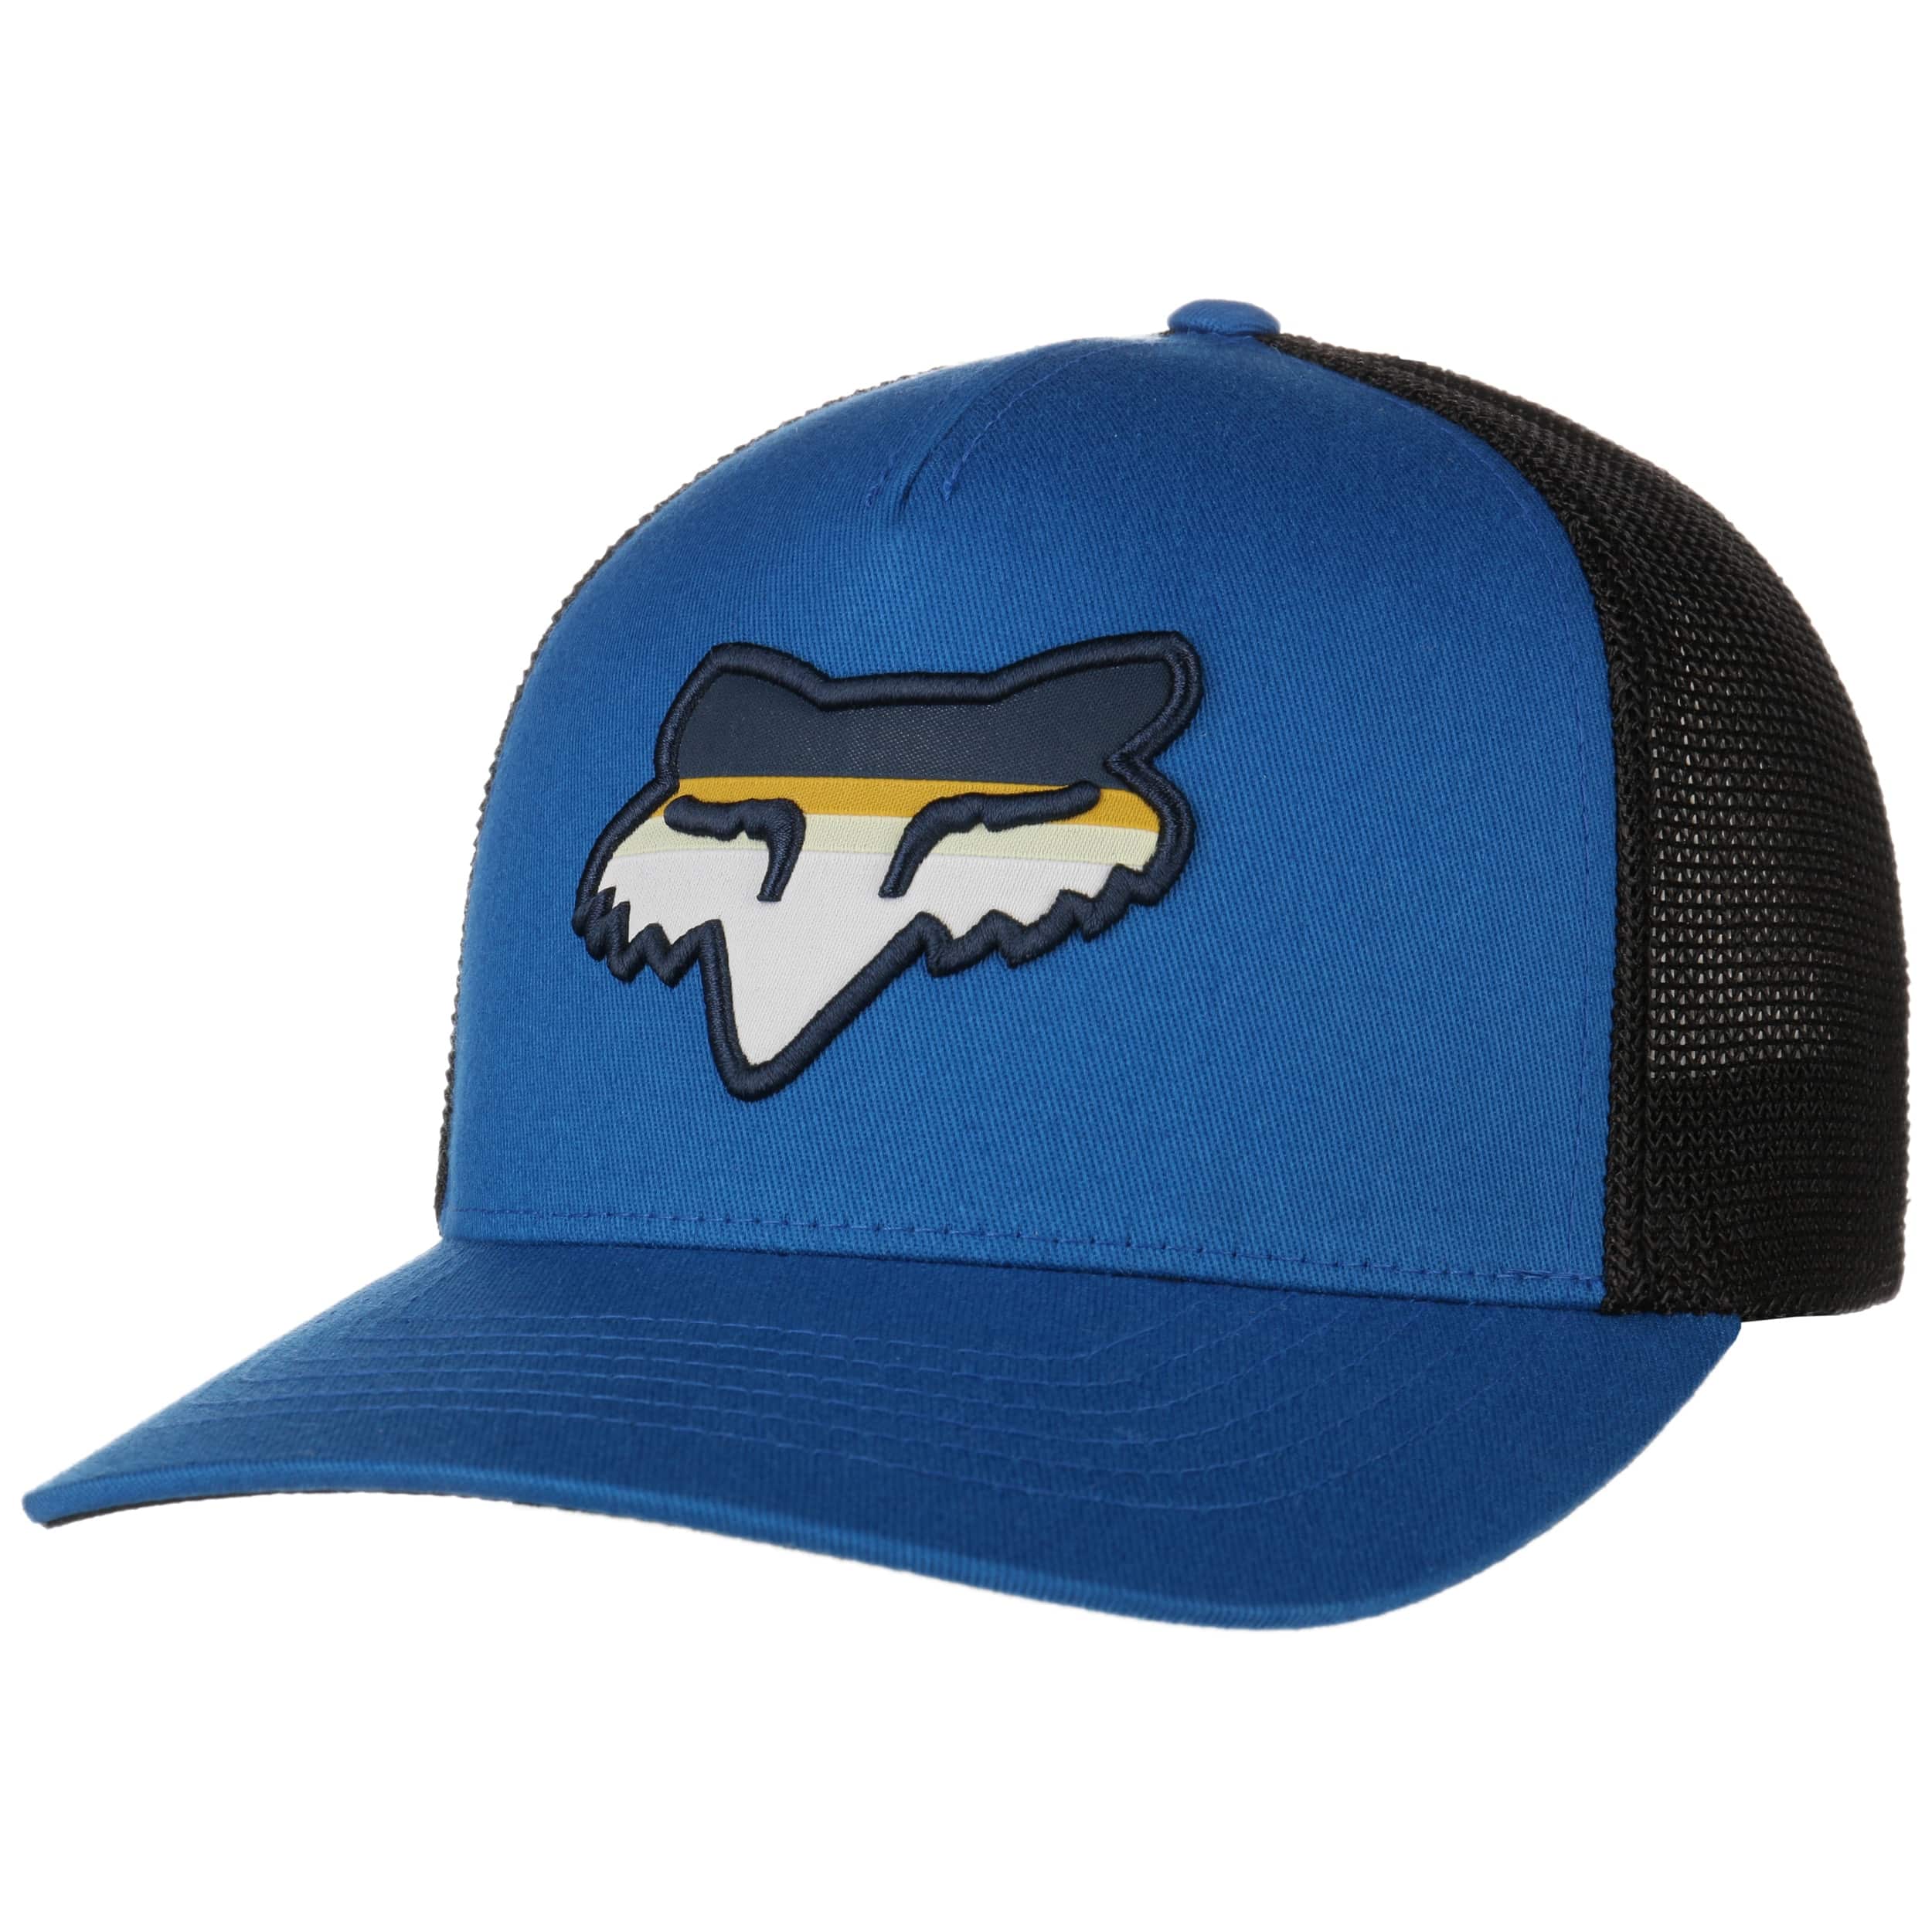 Cappellino Trucker 74 Wins FOX cappellino berretto baseball mesh cap 